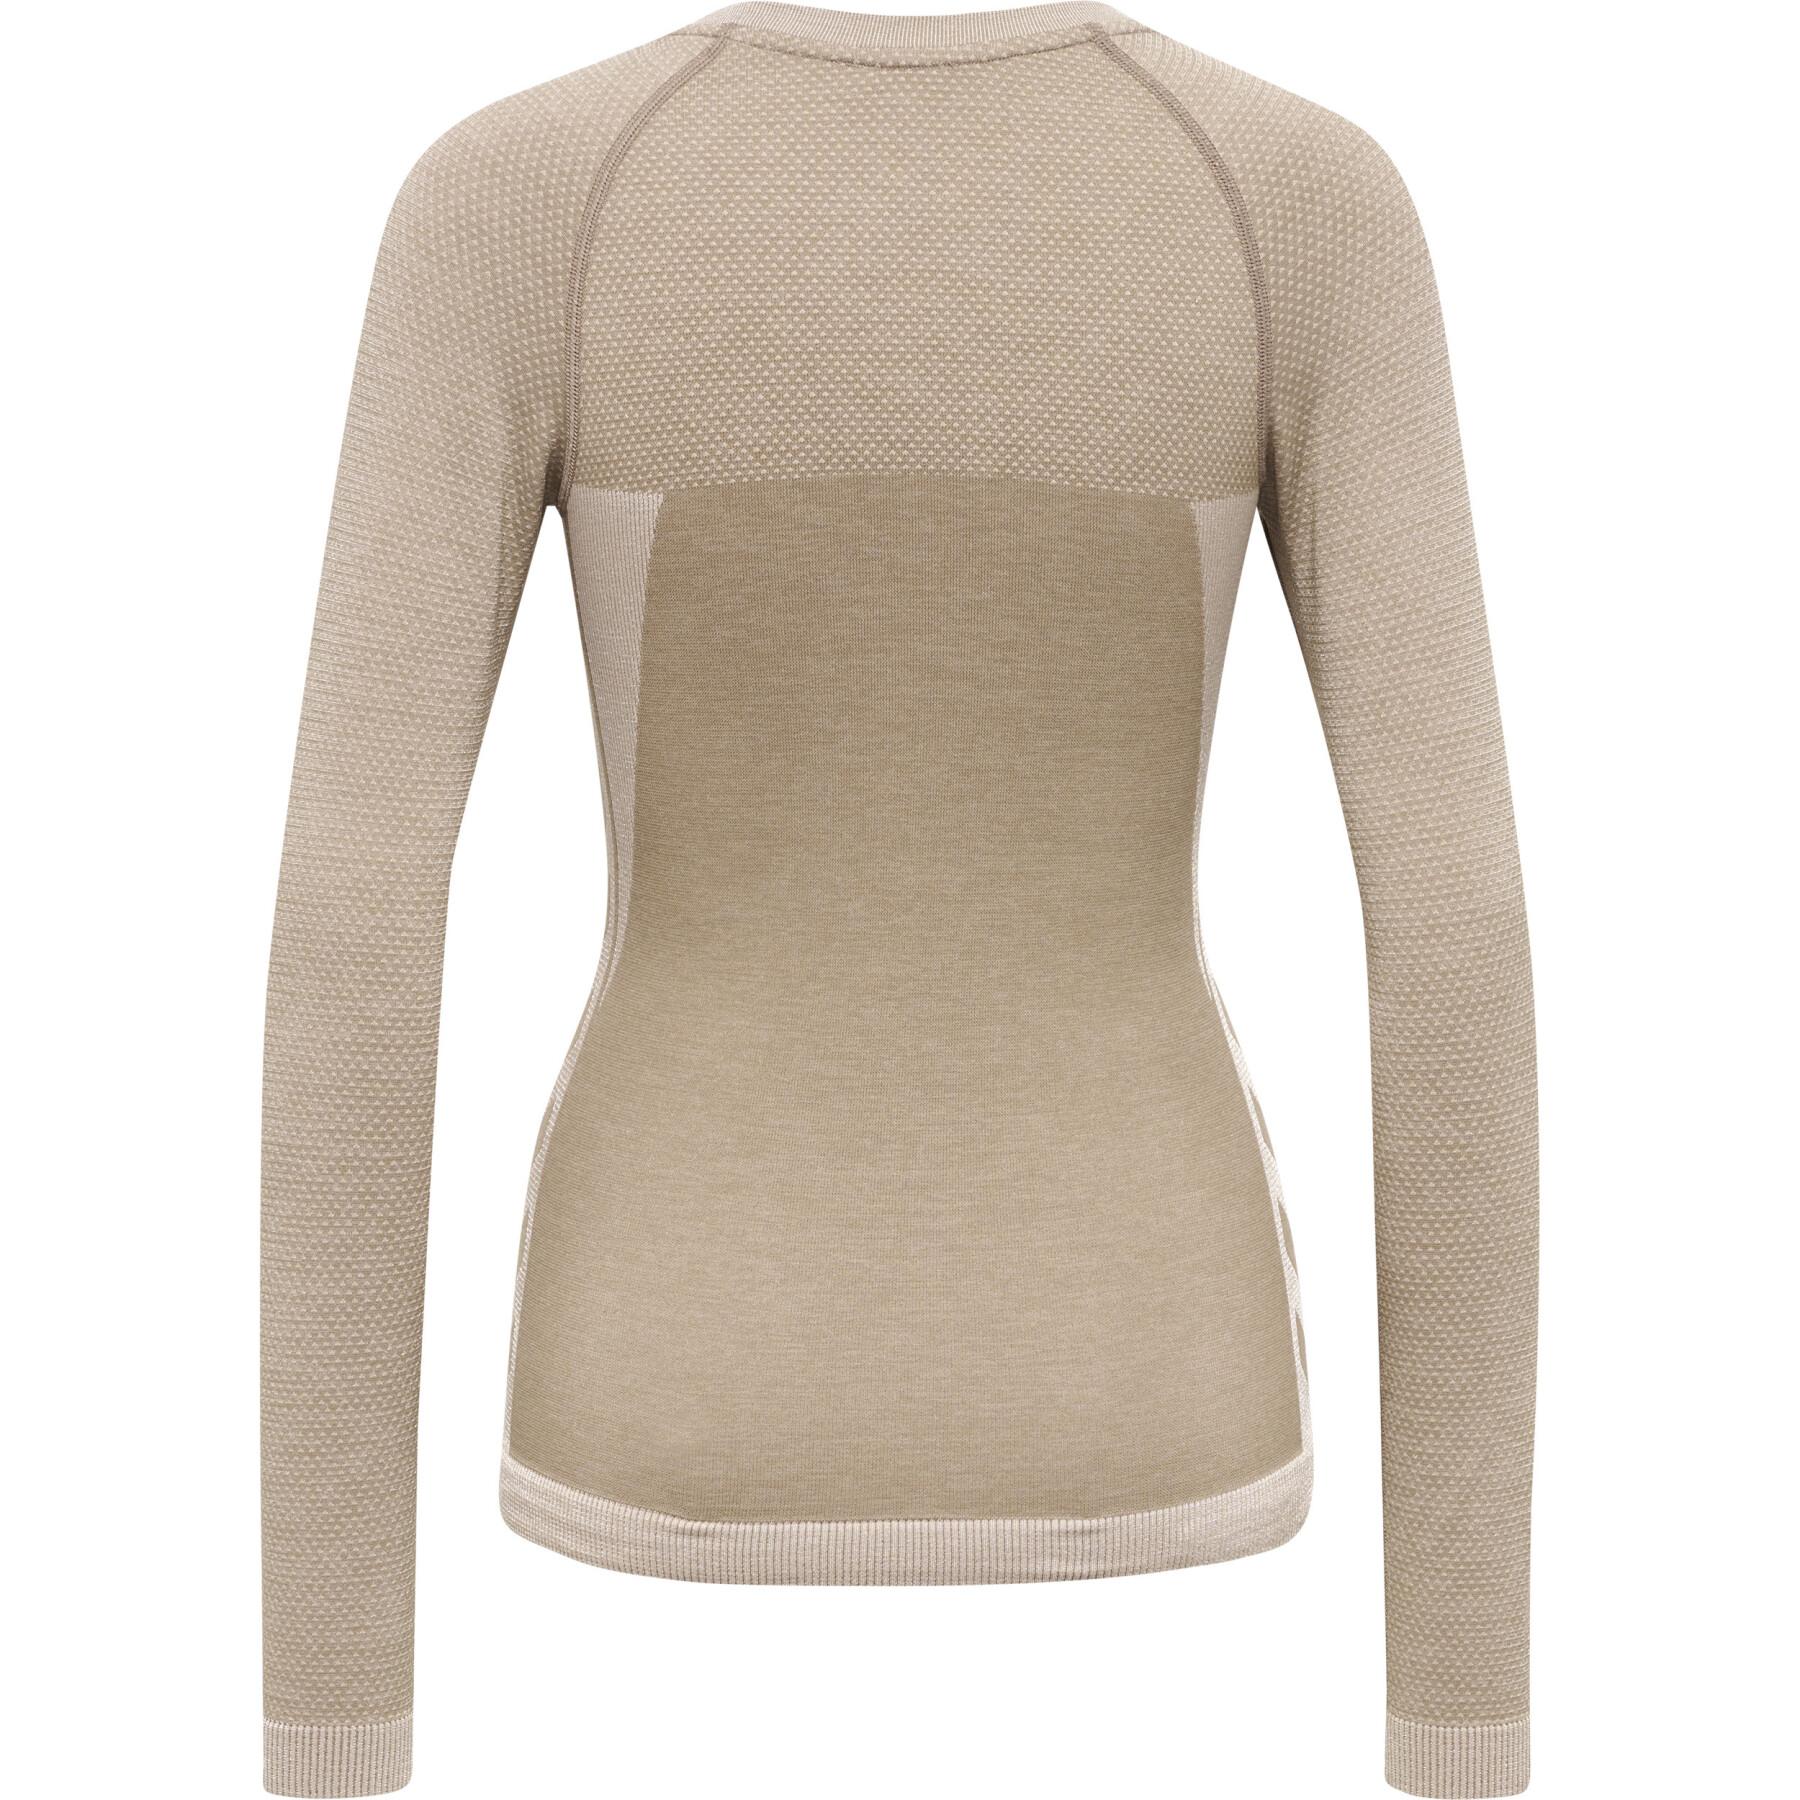 Women's long-sleeved T-shirt Hummel Clea